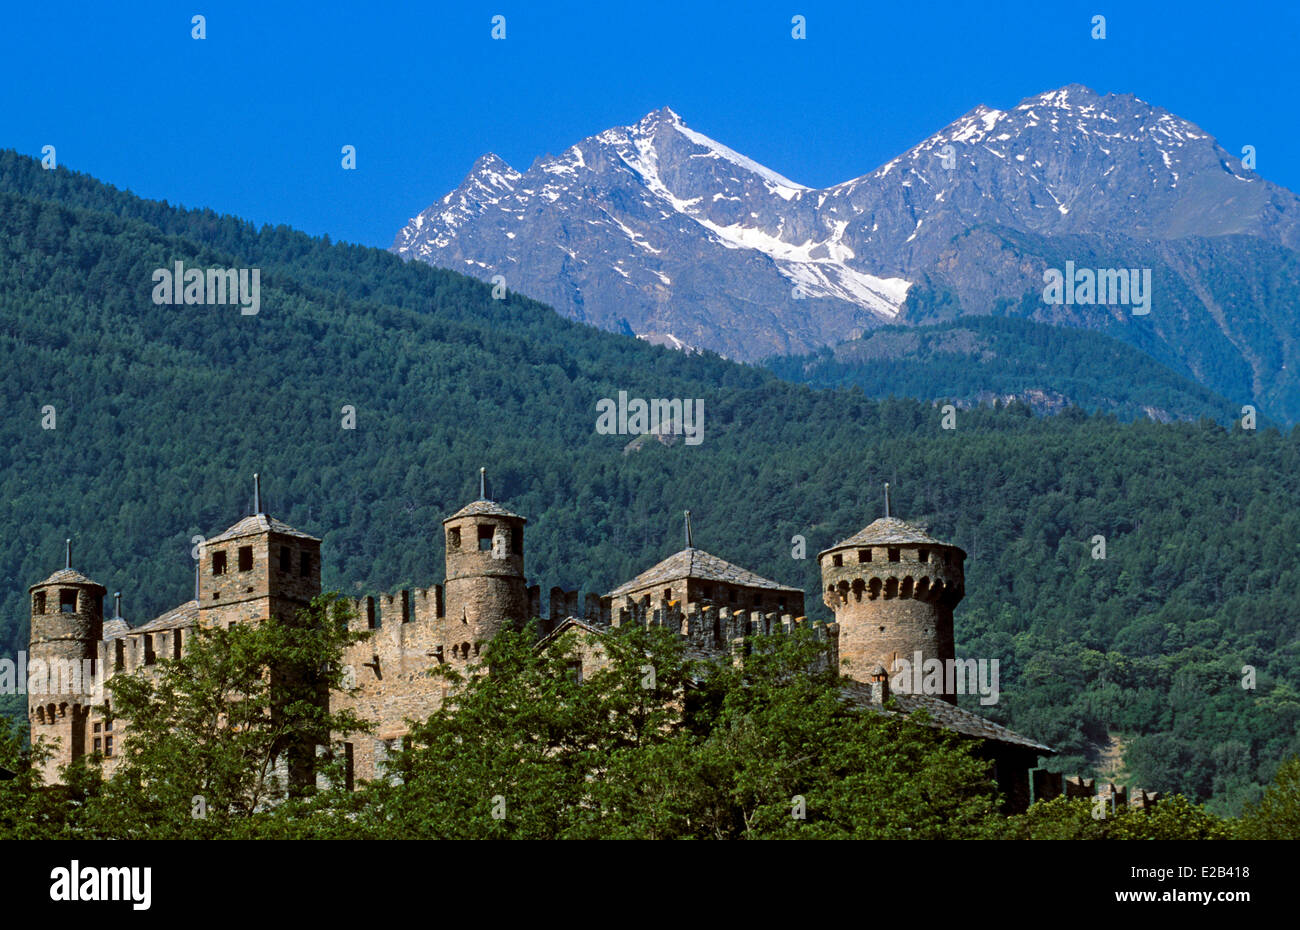 Italie, vallée d'Aoste, Courmayeur, château de Fenis, datée du 14e siècle Banque D'Images